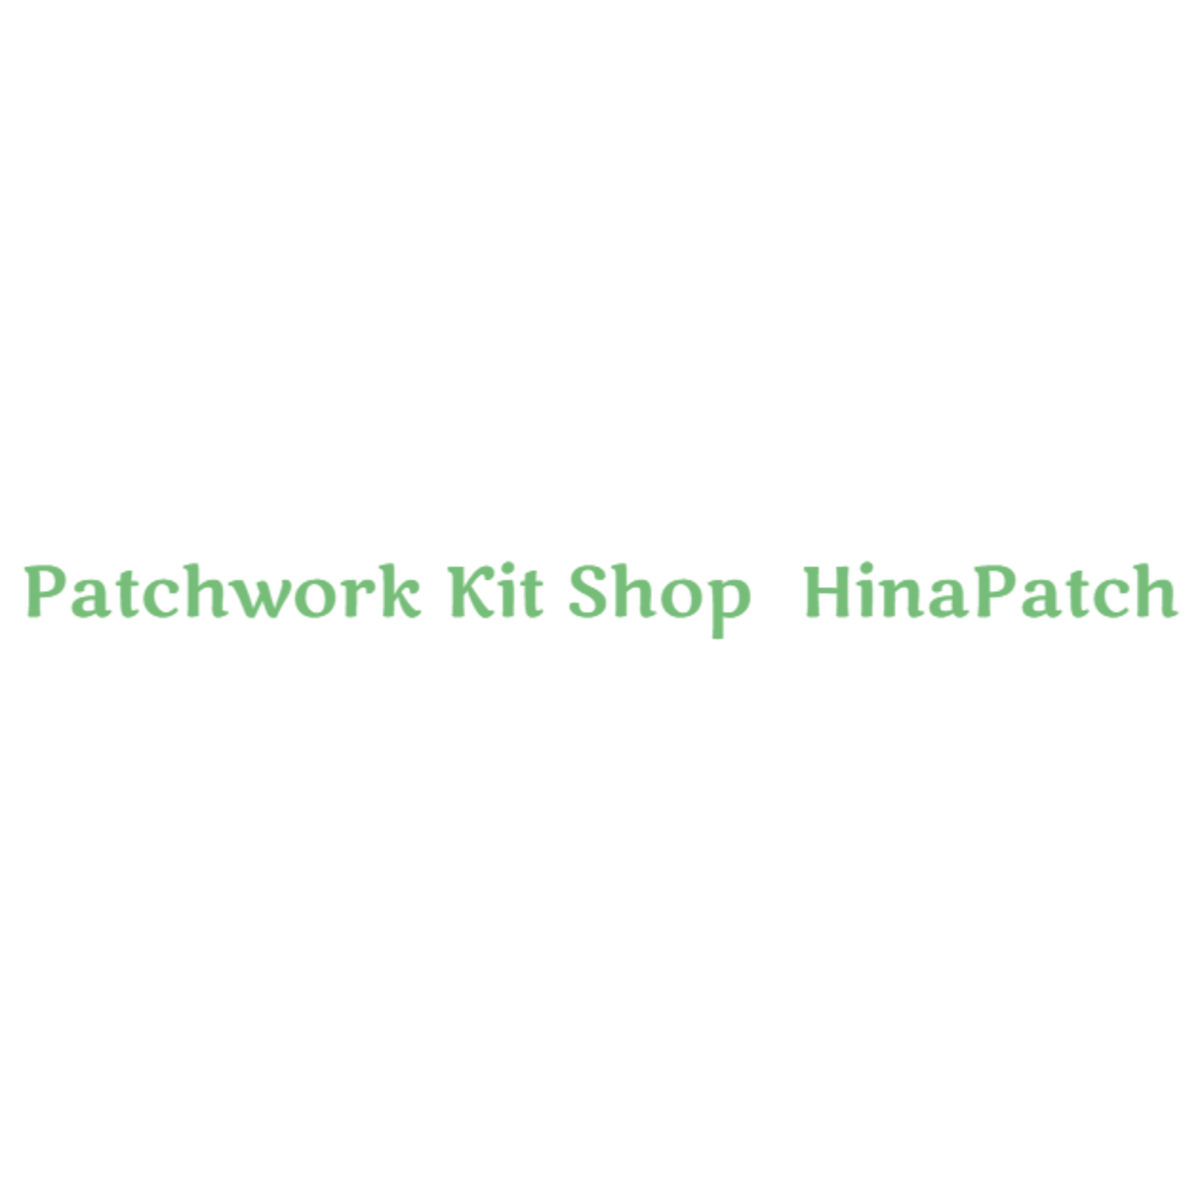 パッチワークキット | Patchwork kit shop HinaPatch